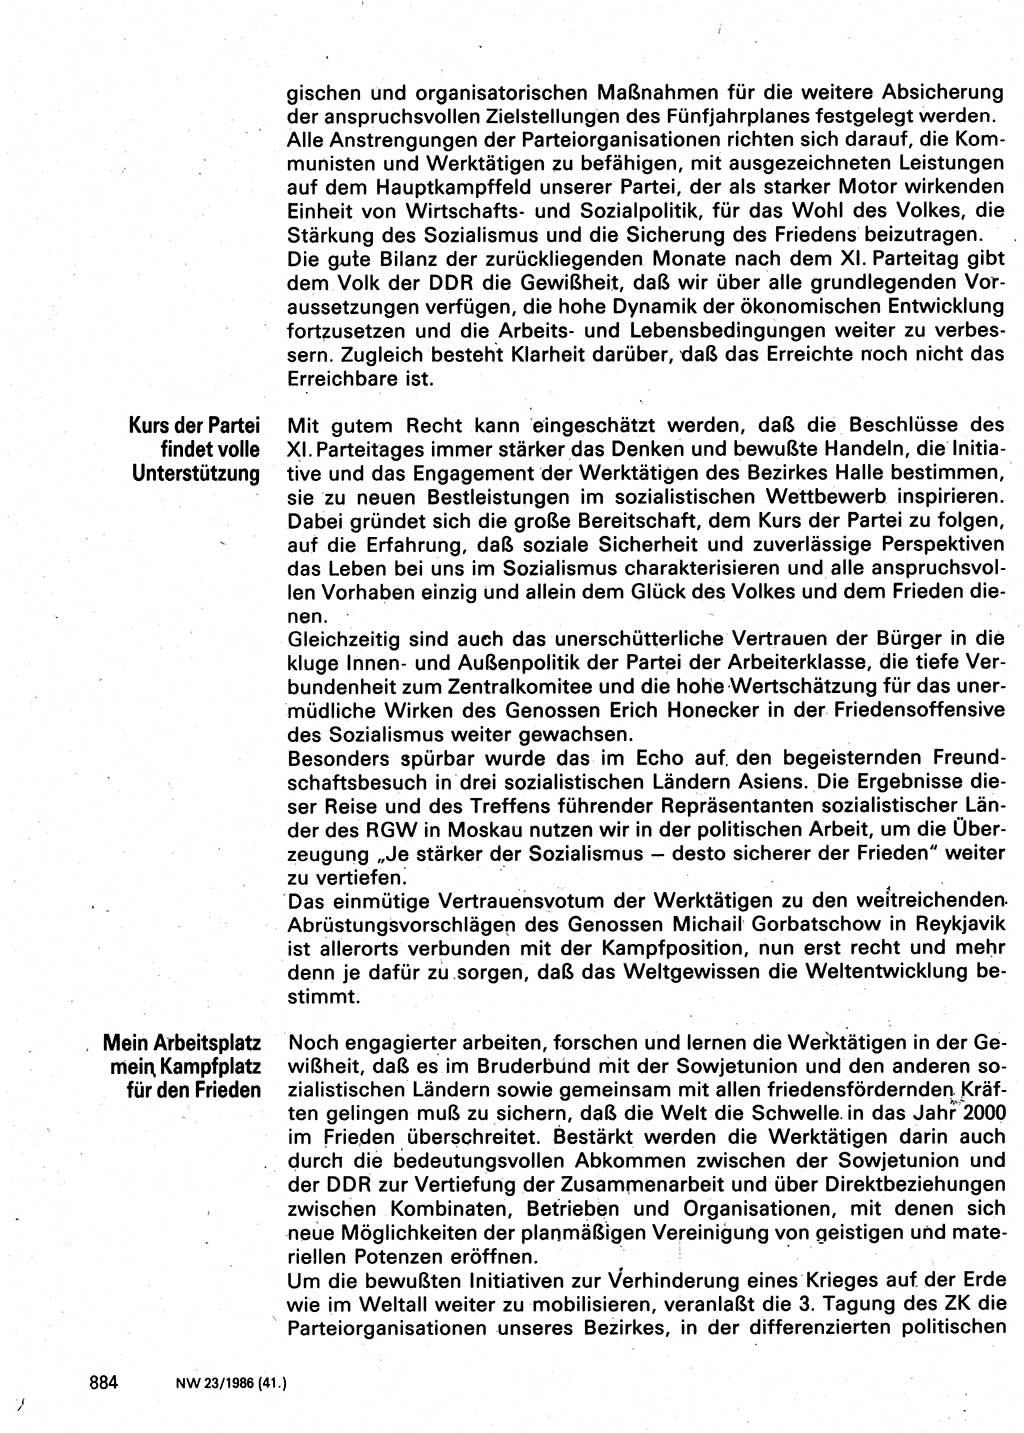 Neuer Weg (NW), Organ des Zentralkomitees (ZK) der SED (Sozialistische Einheitspartei Deutschlands) für Fragen des Parteilebens, 41. Jahrgang [Deutsche Demokratische Republik (DDR)] 1986, Seite 884 (NW ZK SED DDR 1986, S. 884)